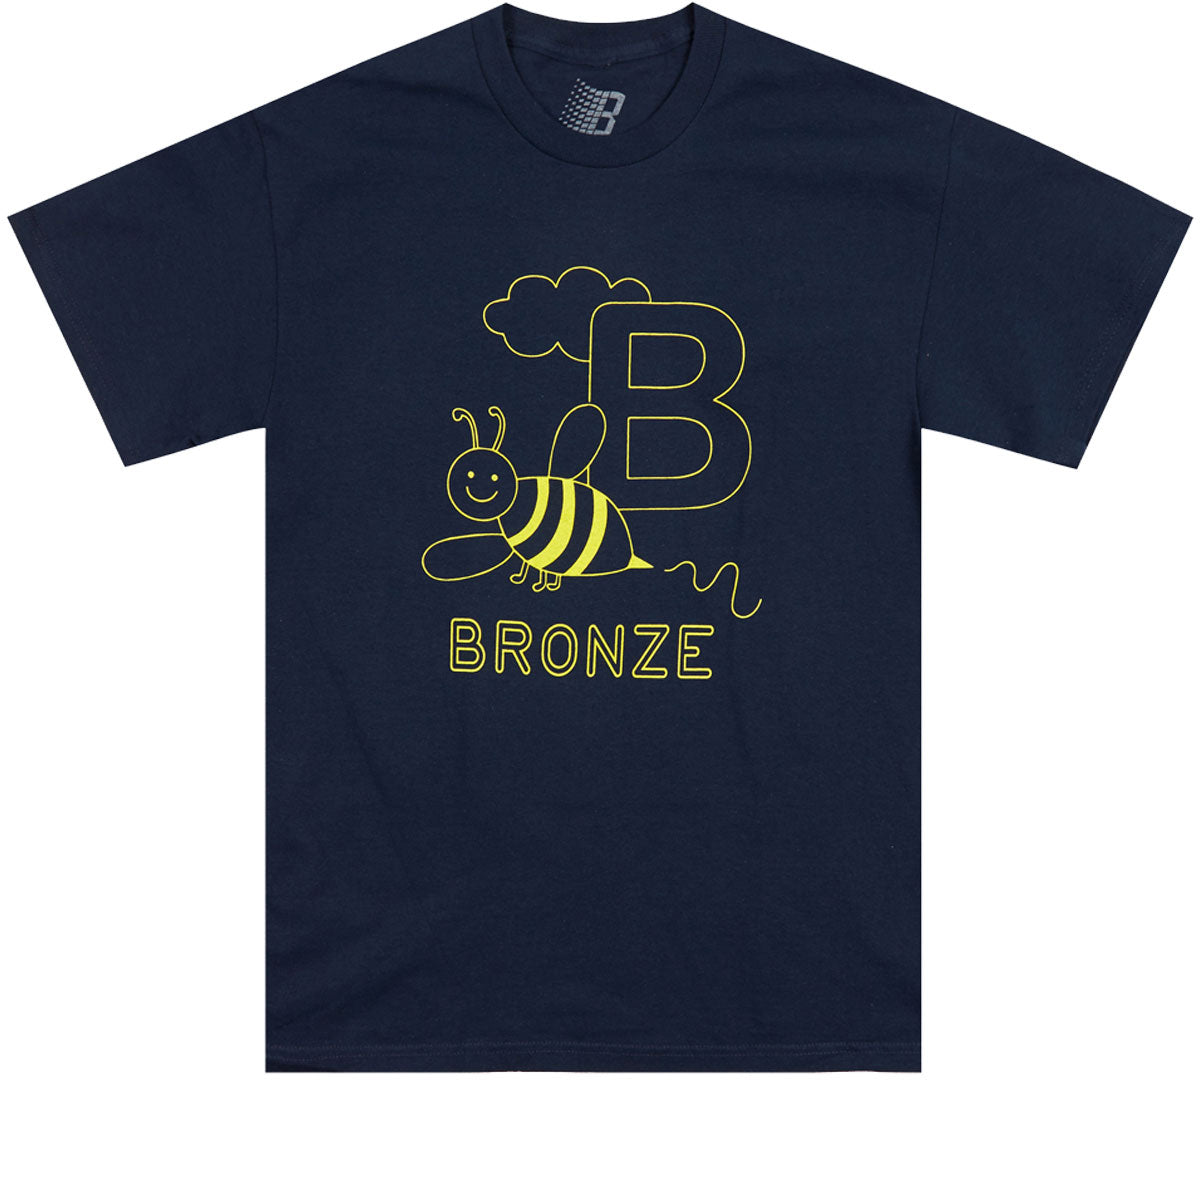 Bronze 56k B Is For Bronze T-Shirt - Navy image 1